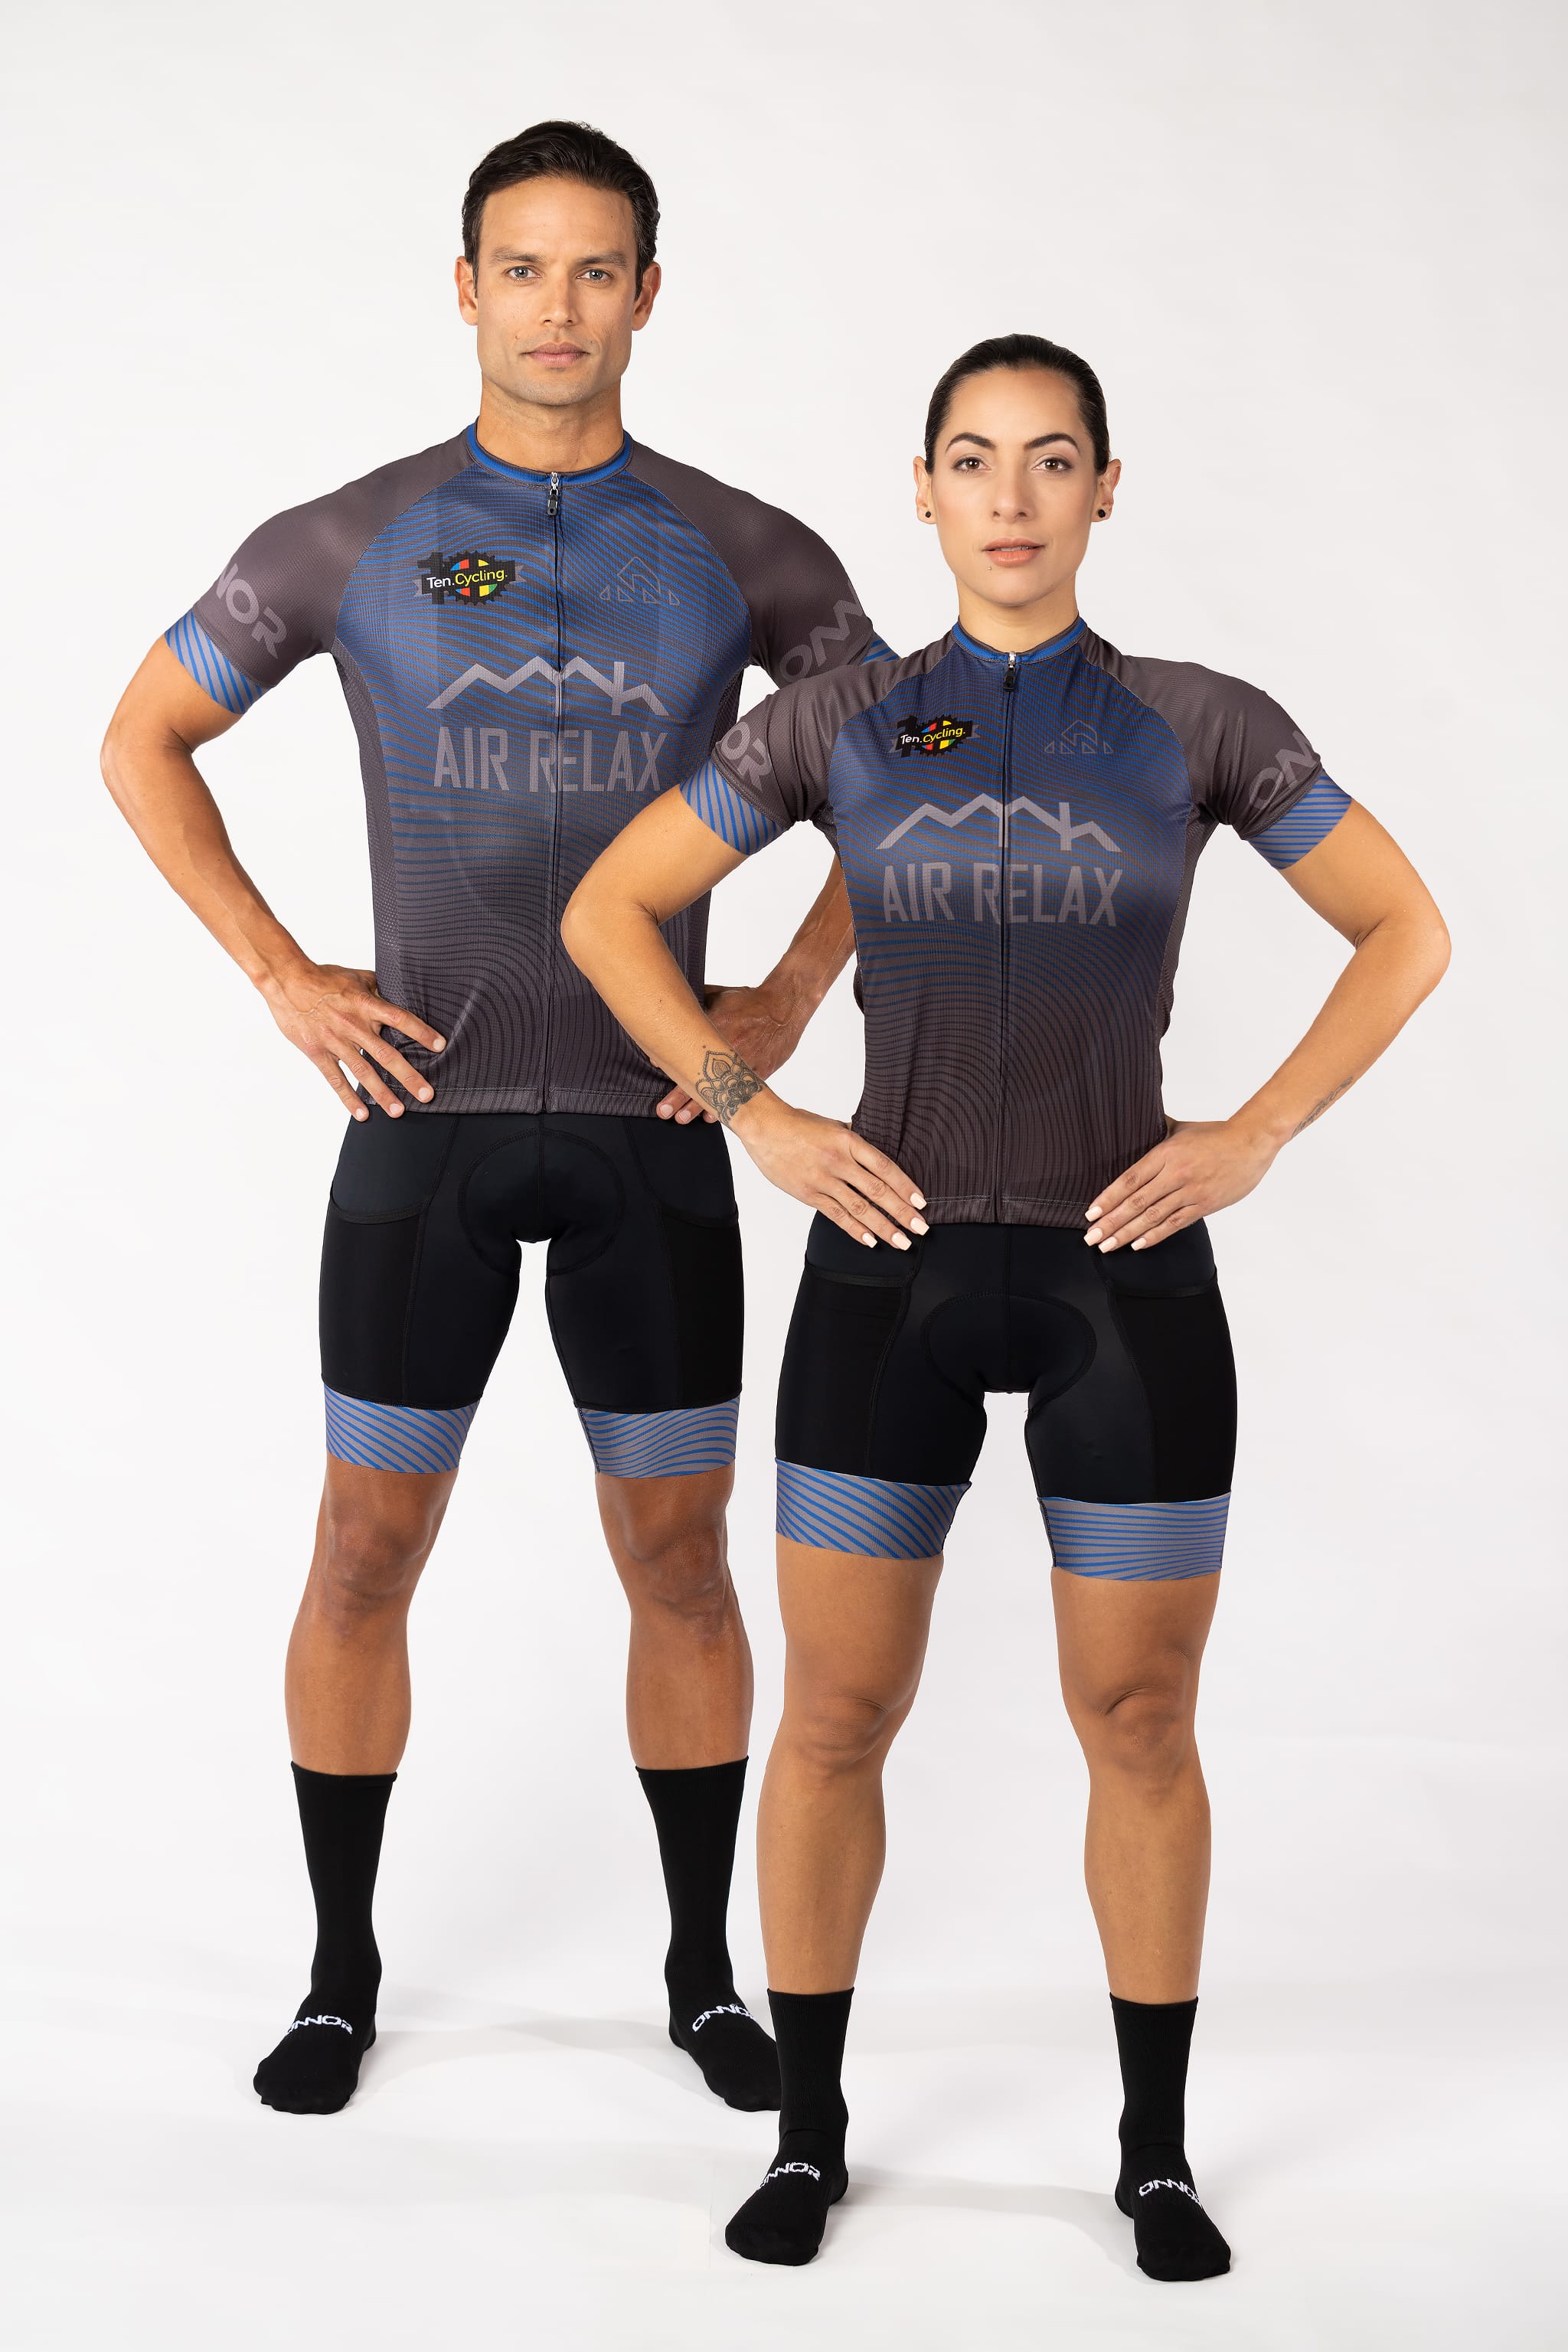 Miami Personalized Cyclist Jerseys